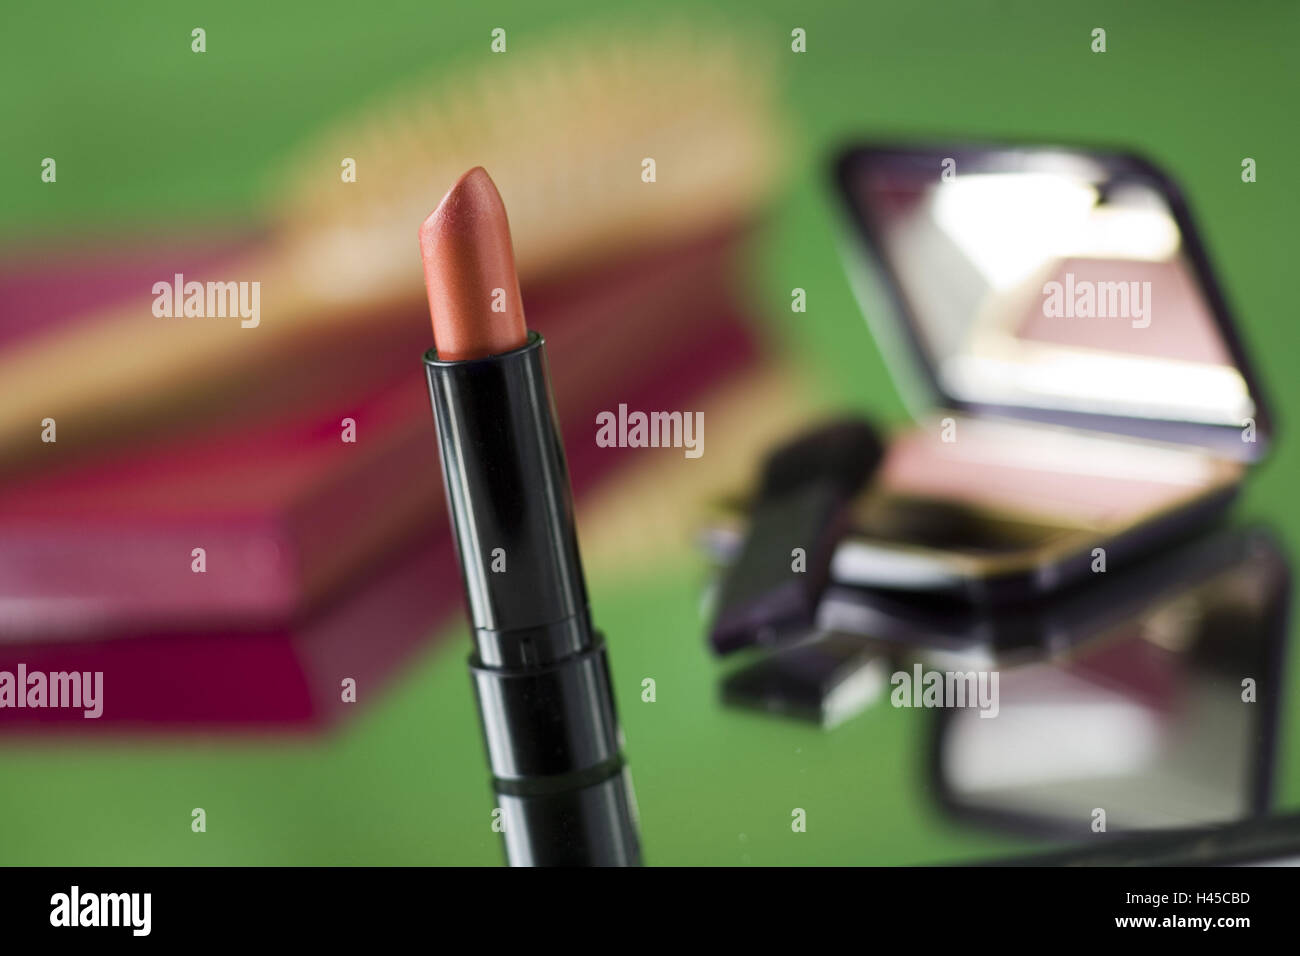 Artículo de cosméticos, barras de labios, Foto de stock